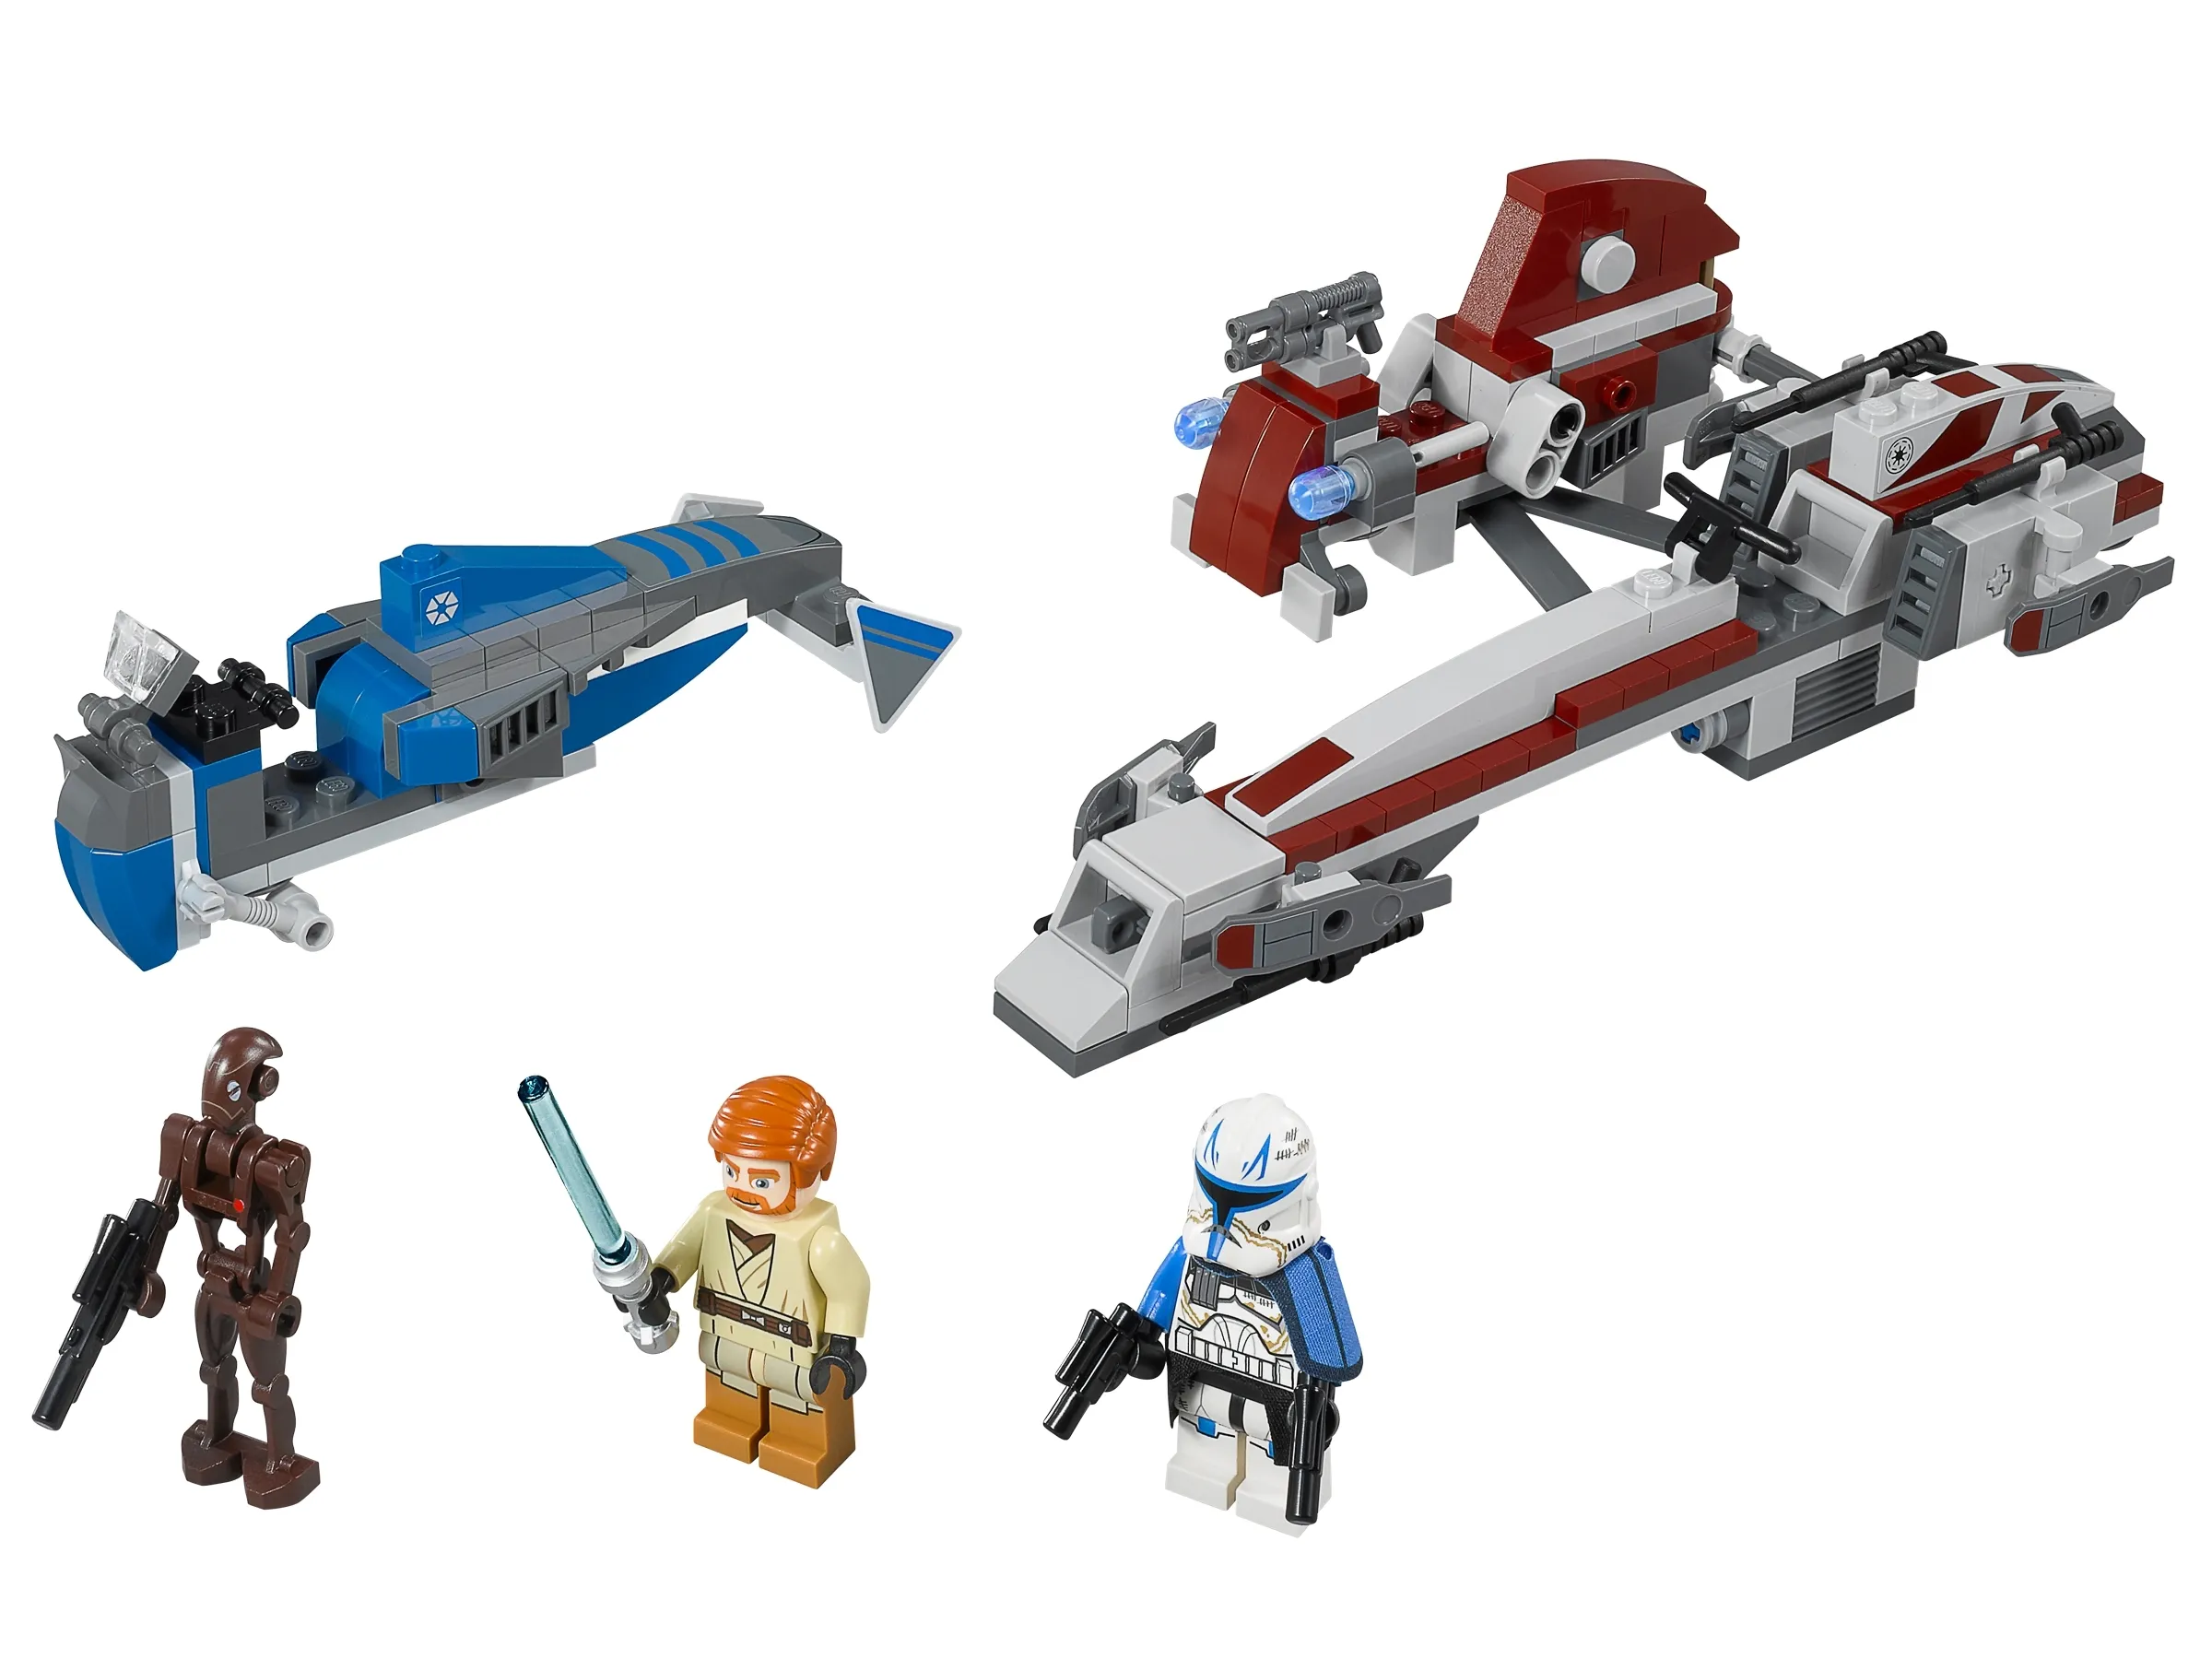 LEGO Star Wars BARC Speeder with Sidecar • Set 75012 • SetDB